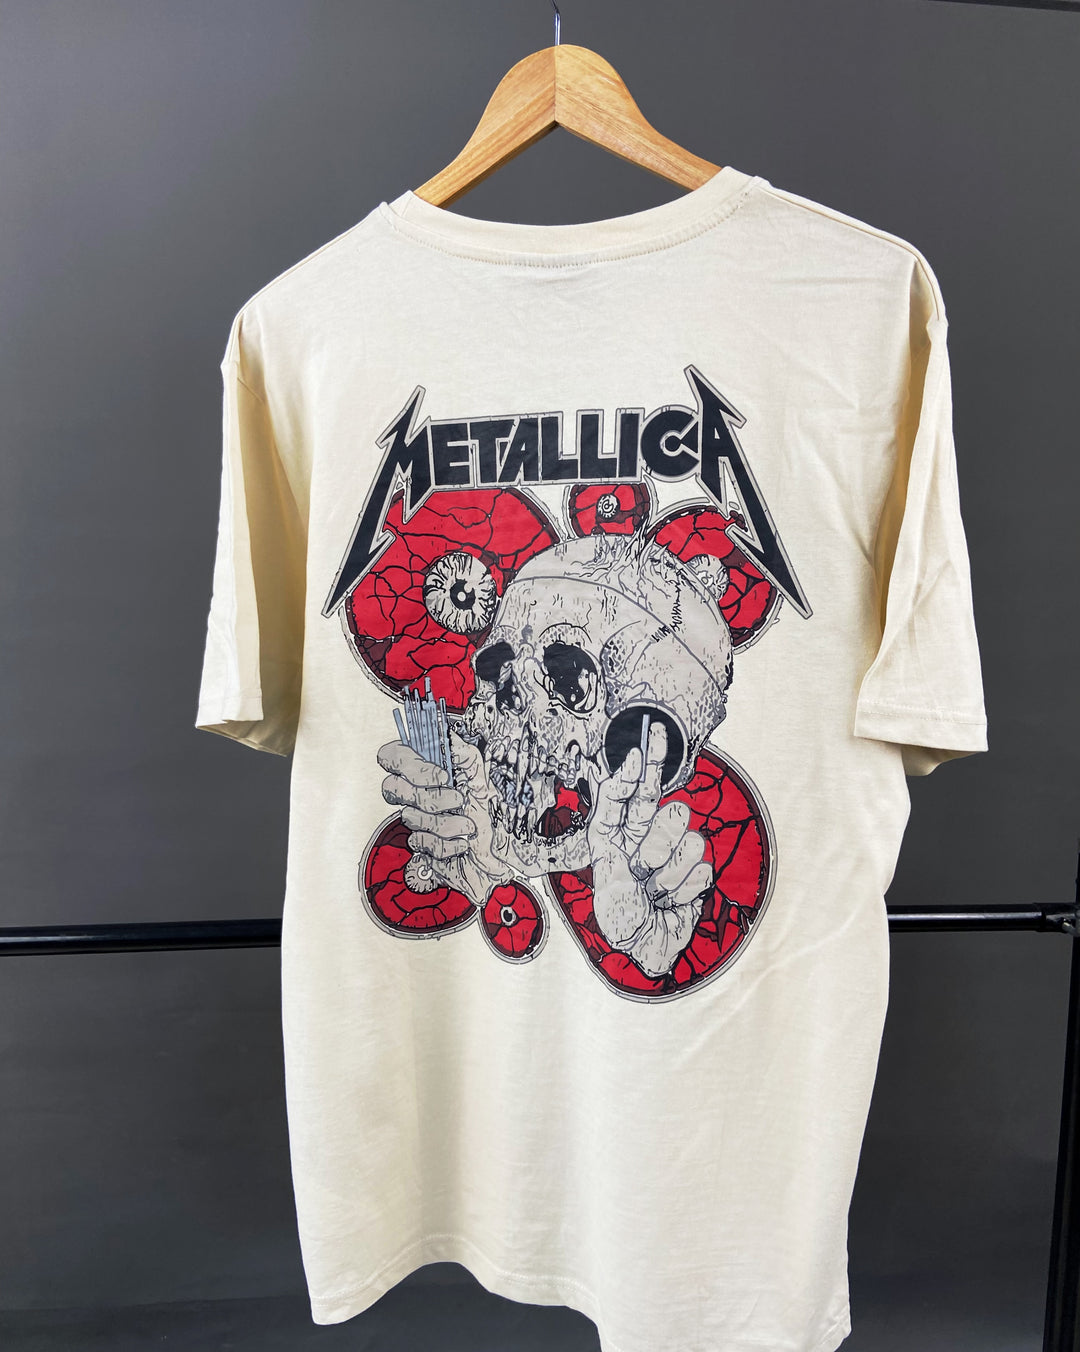 Renvill Metallica Backprint t-shirt in beige